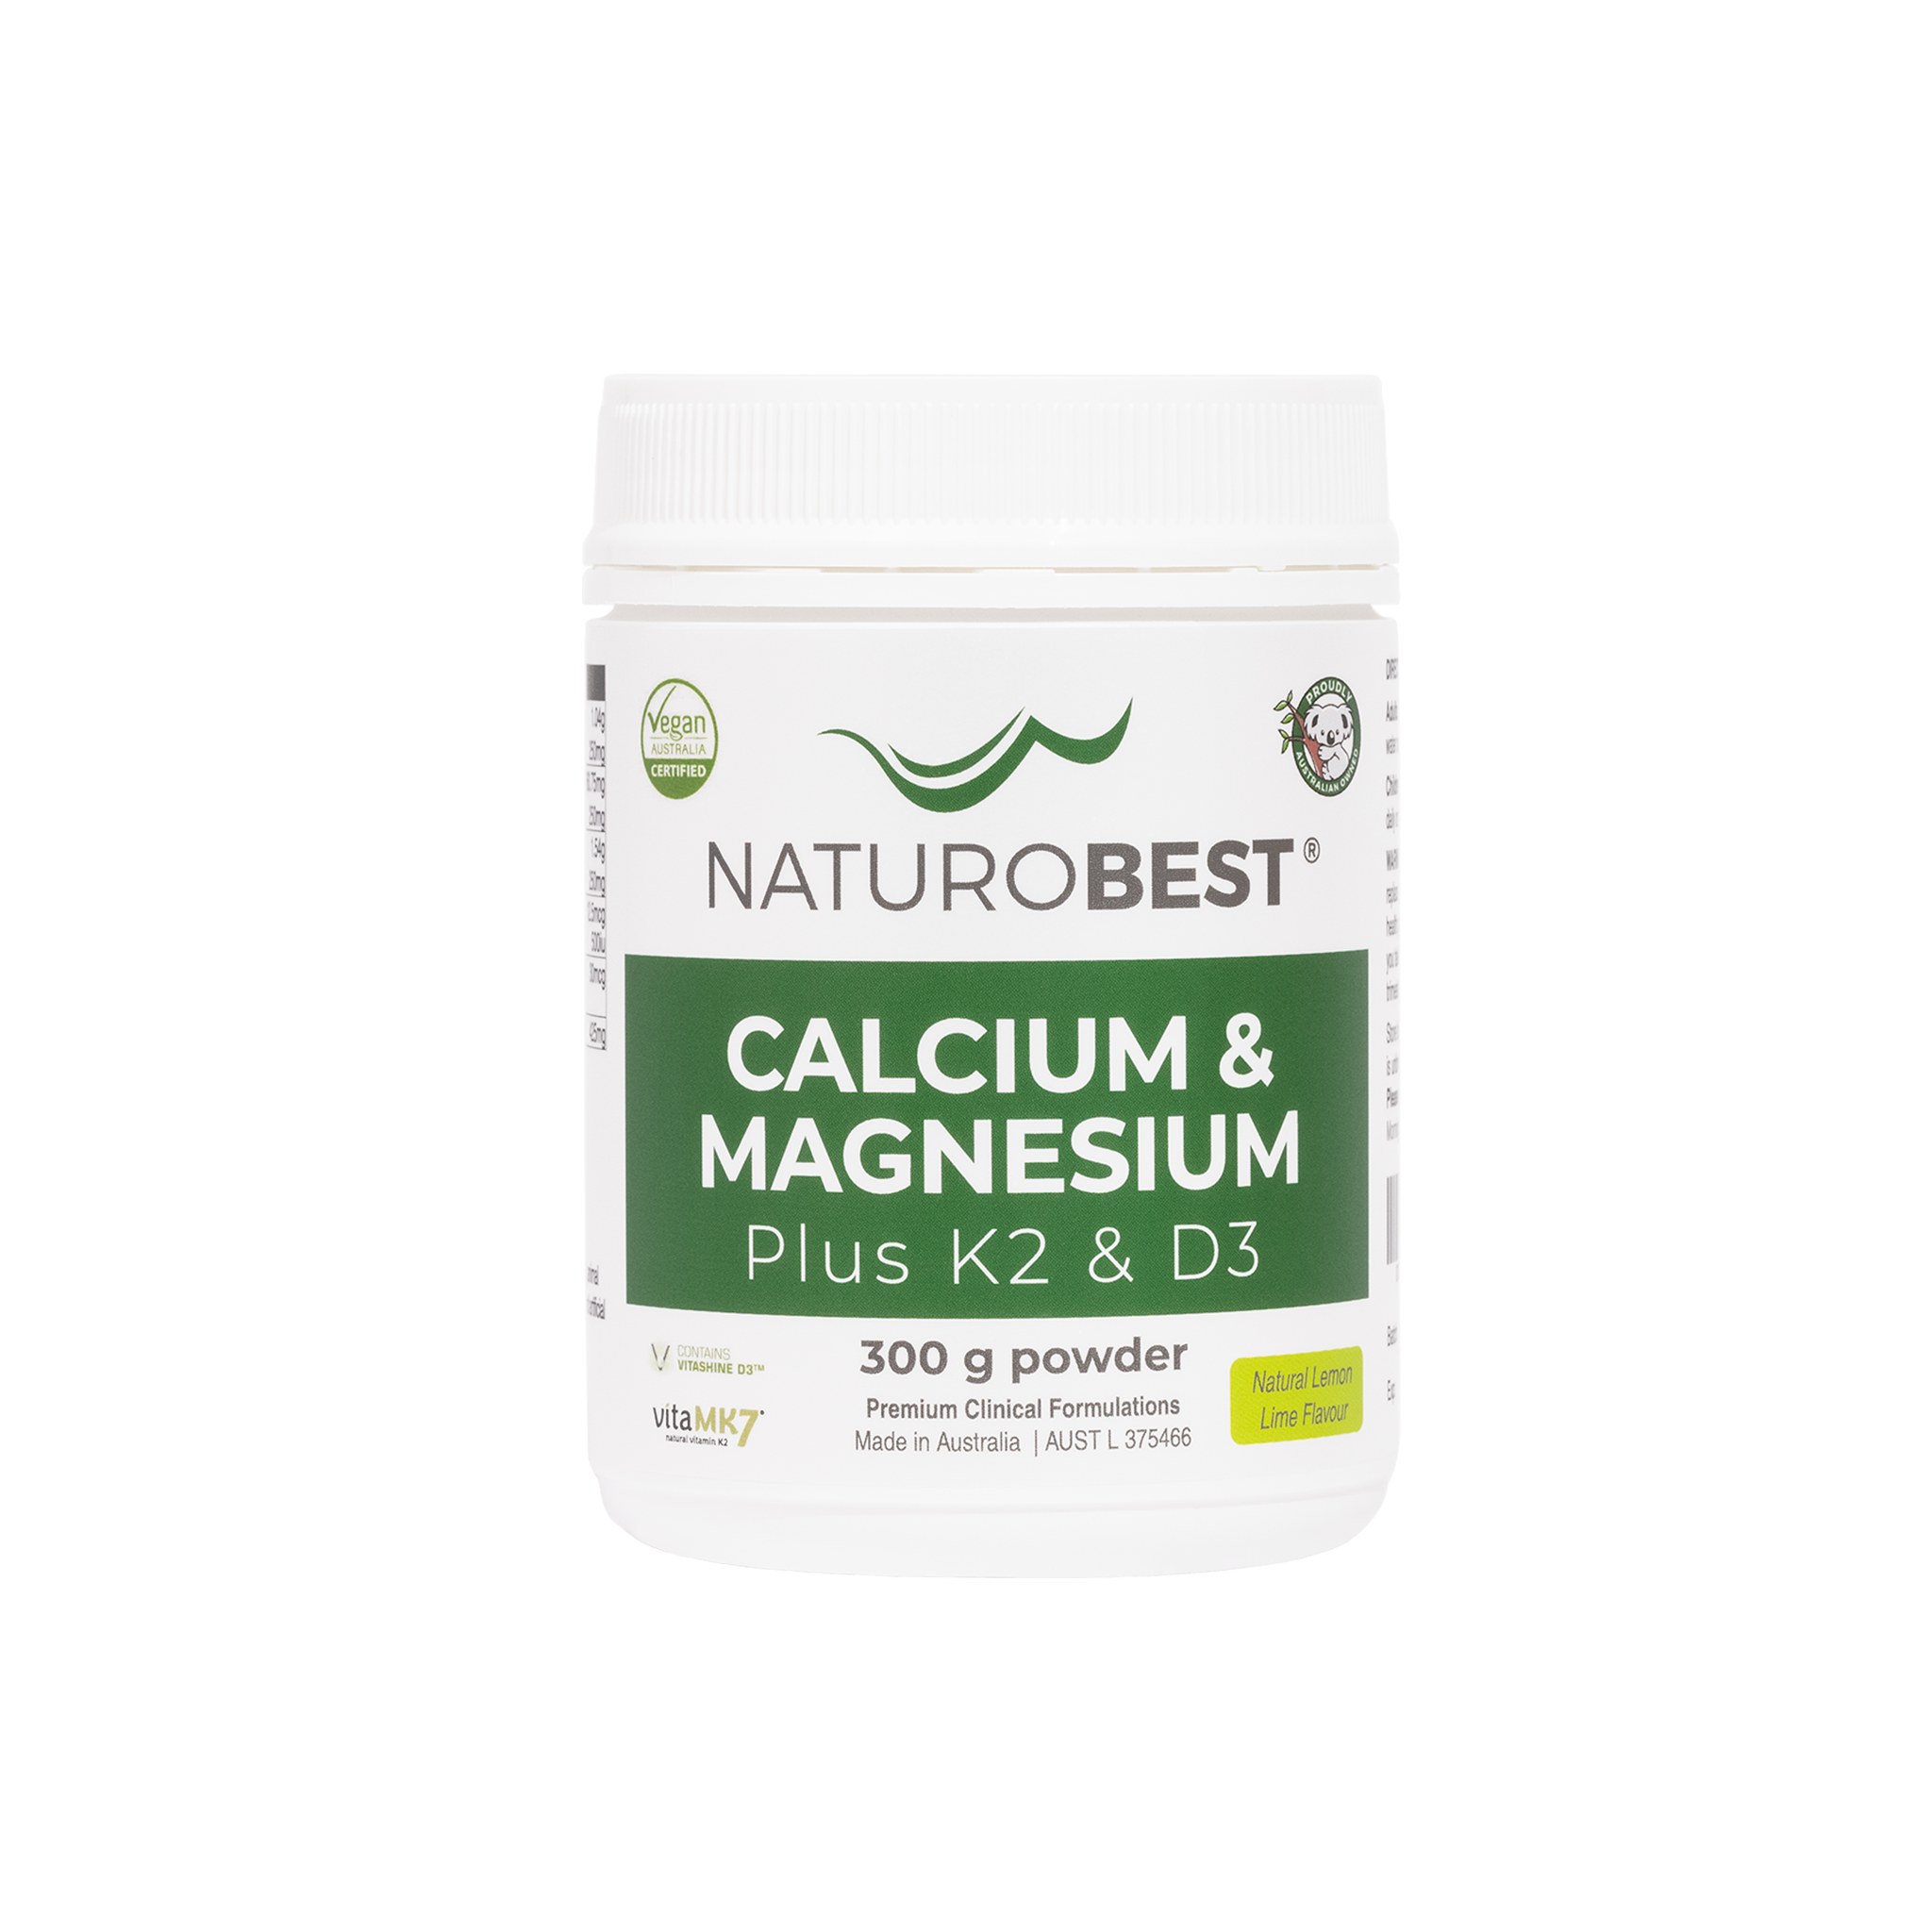 Calcium & Magnesium Plus K2 & D3 300gms - Carton